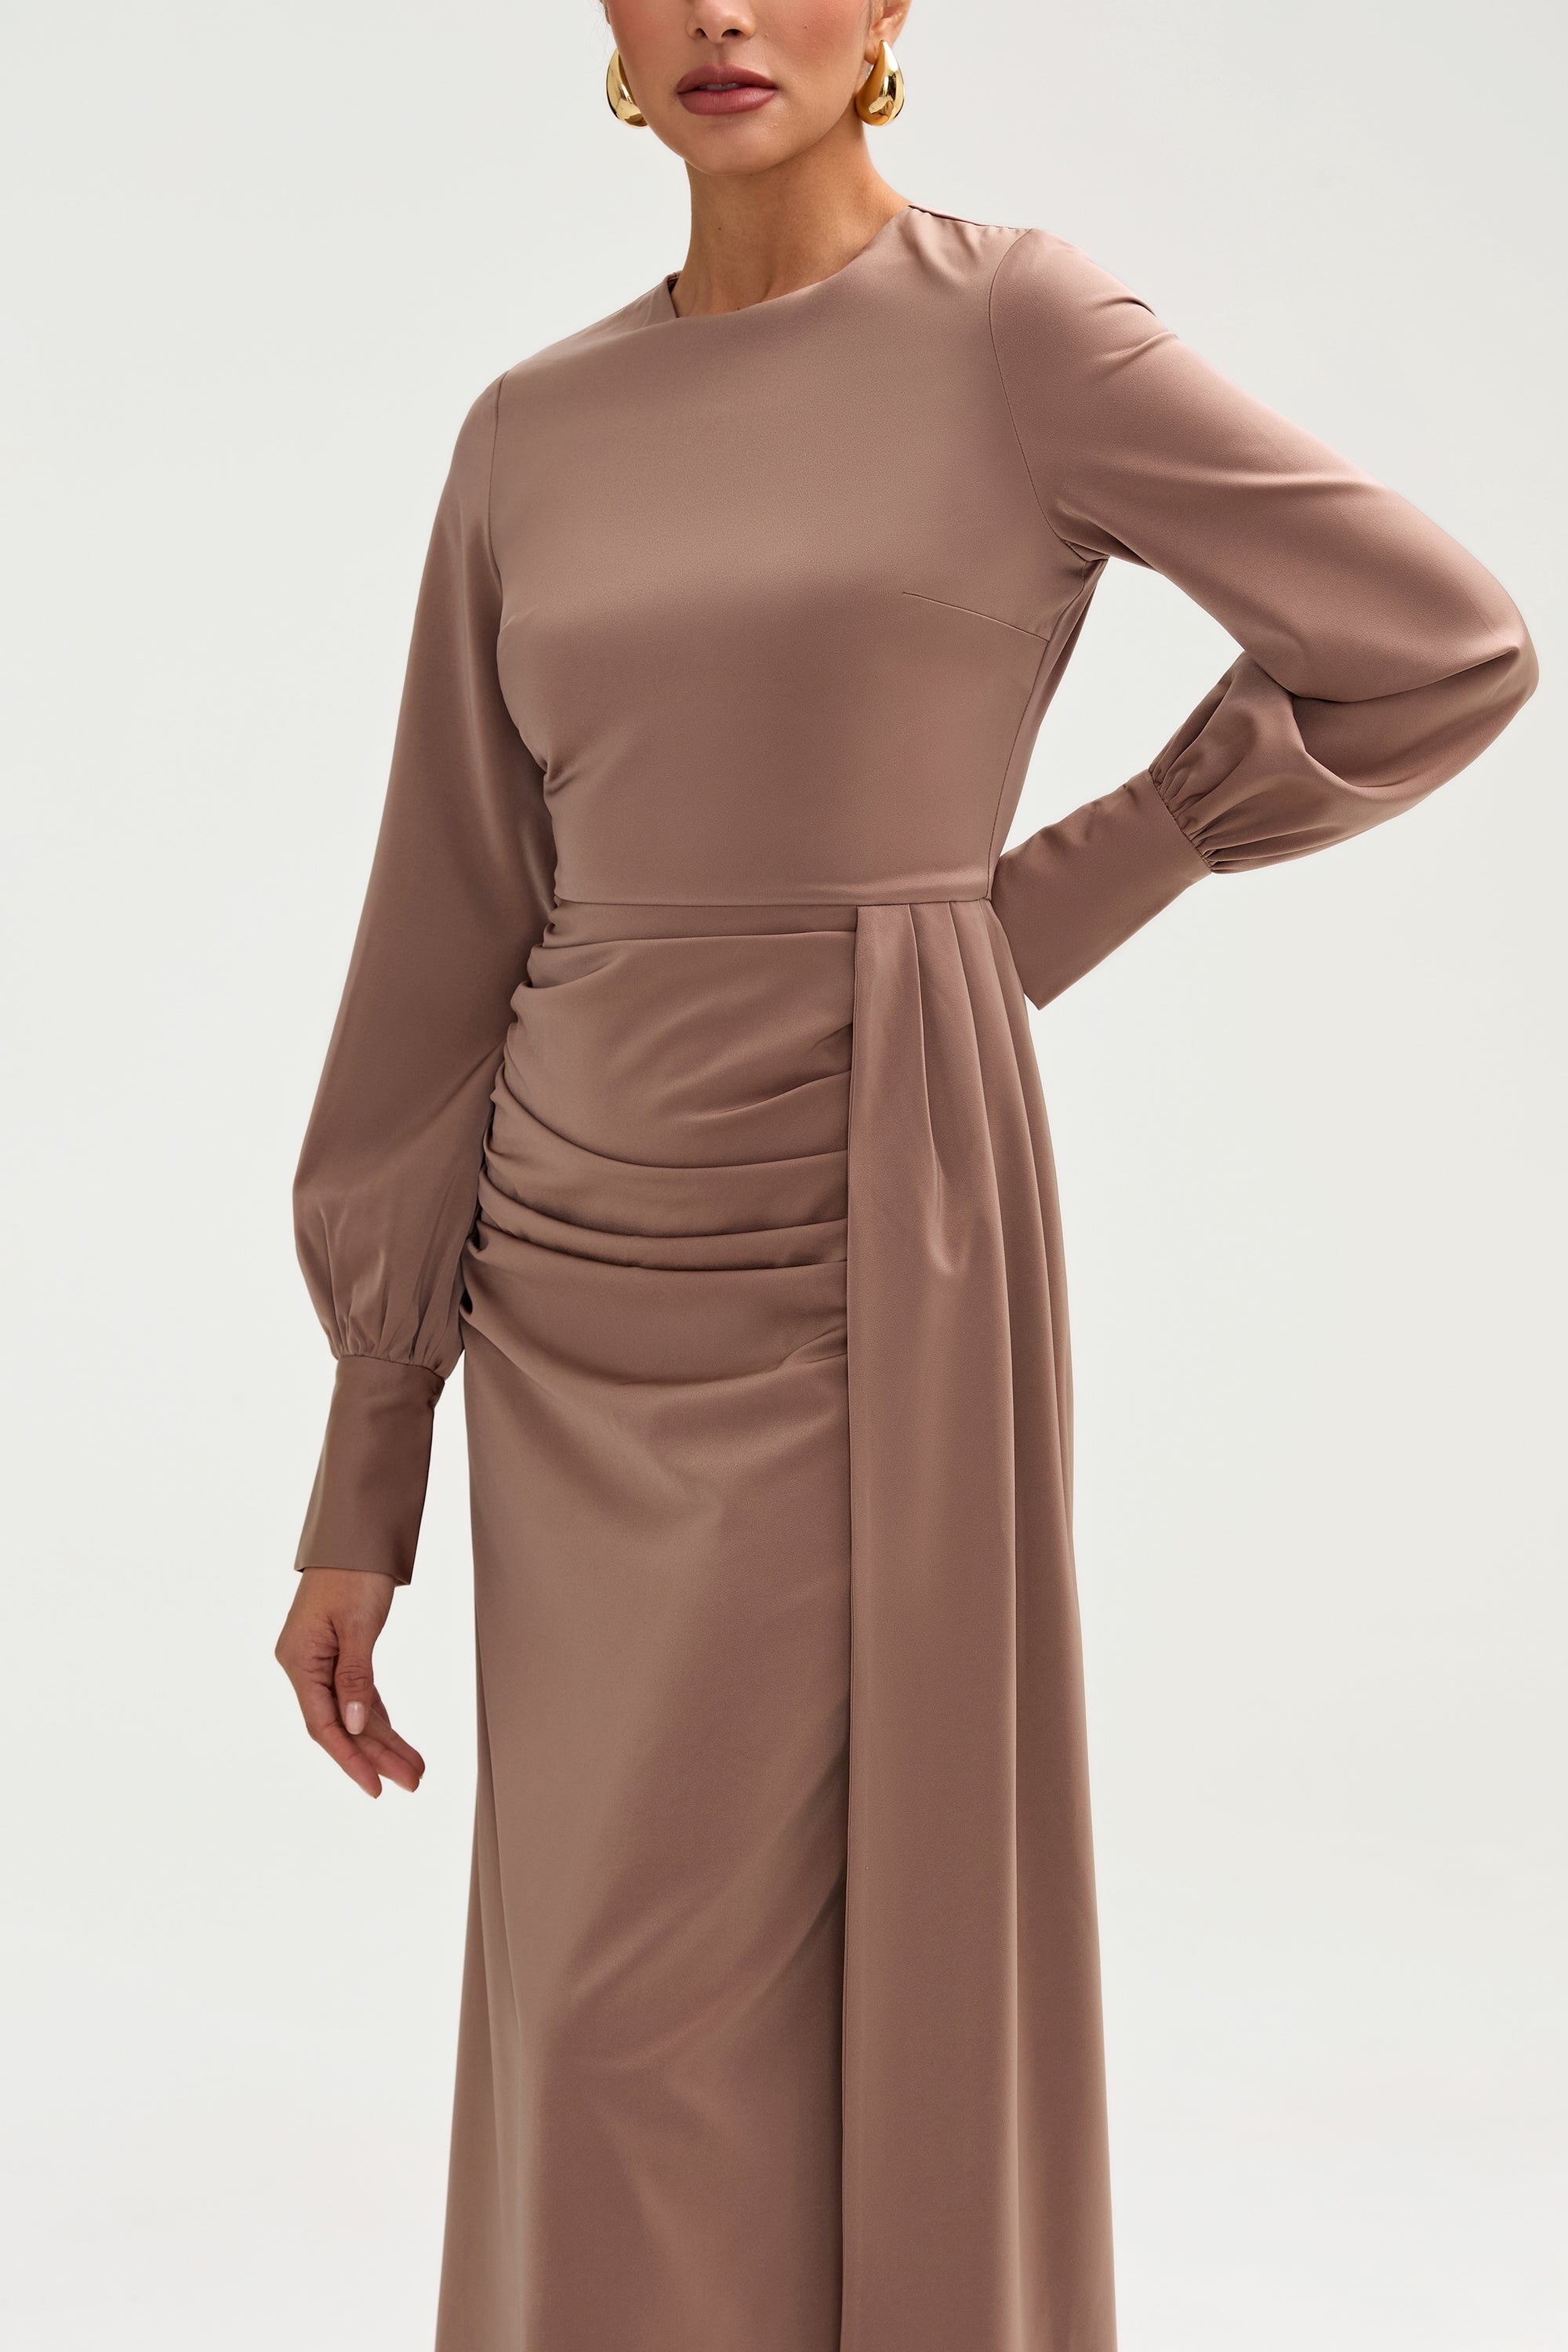 Laylani Satin Rouched Maxi Dress - Taupe Clothing saigonodysseyhotel 